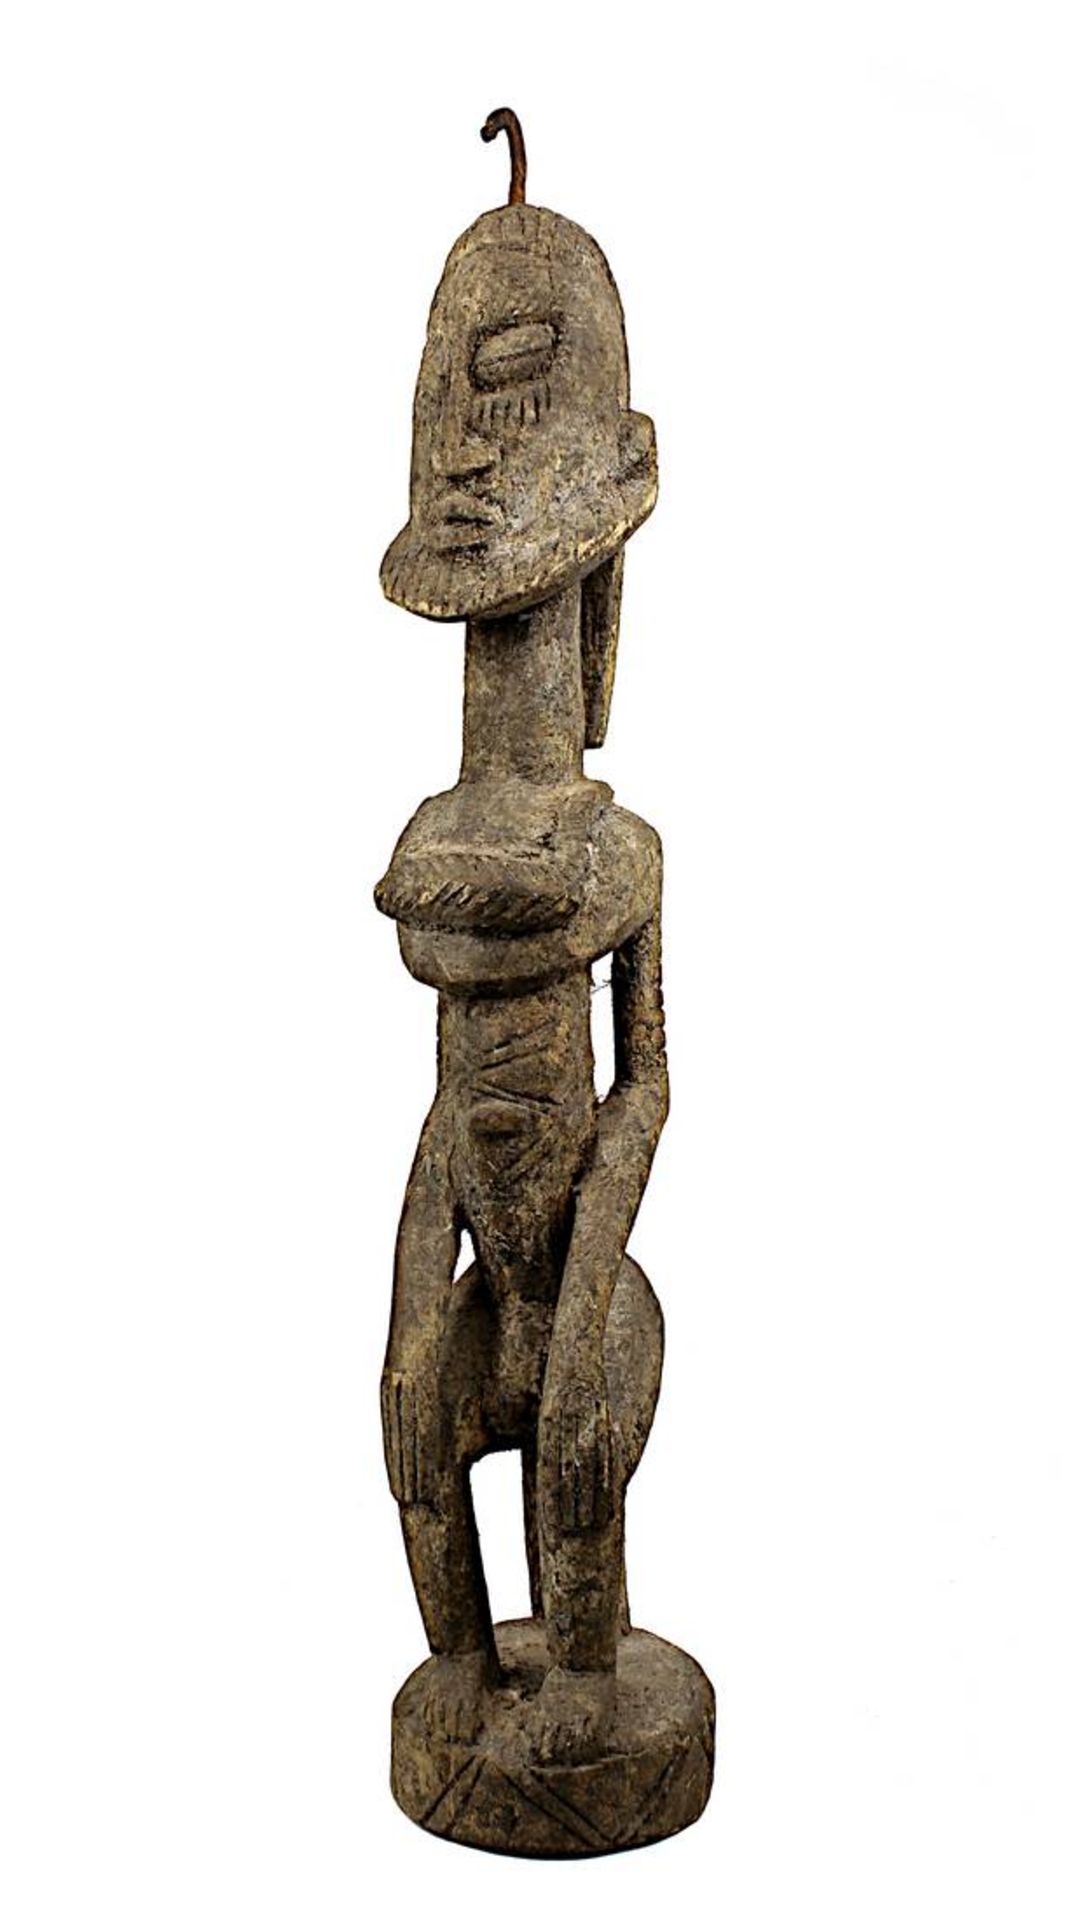 Männliche Figur der Dogon, Mali, Holz aus einem Stück geschnitzt, mit krustiger Patina, sitzende